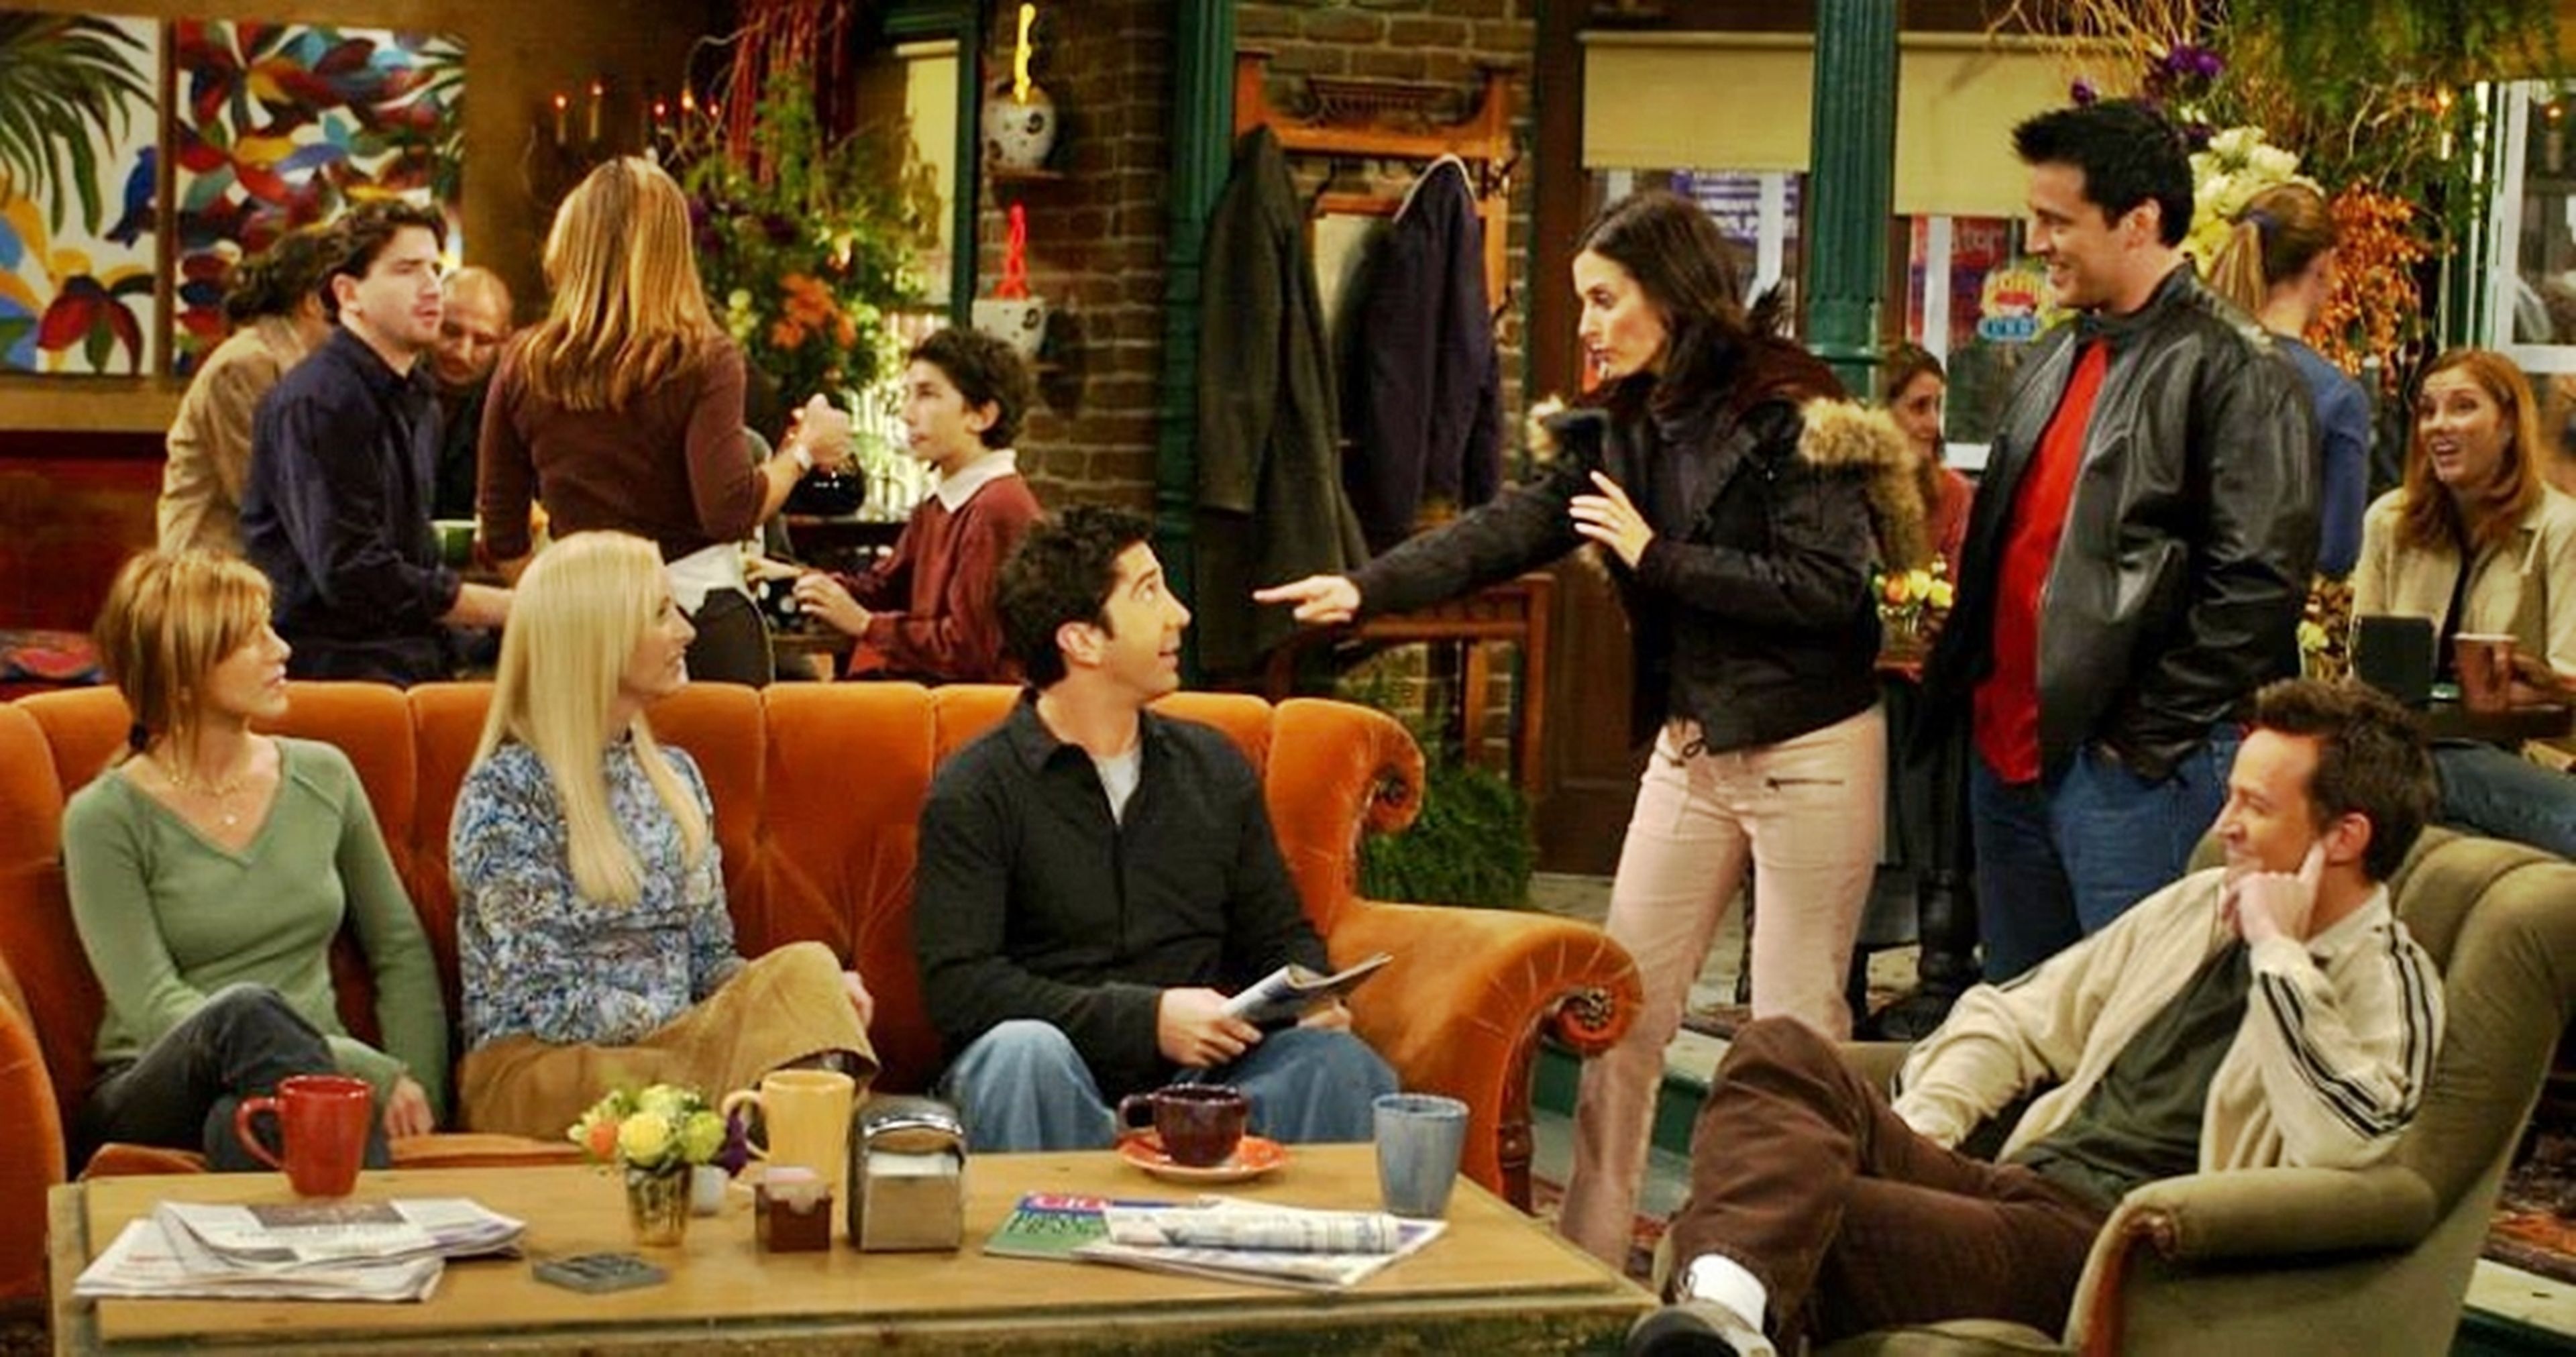 Detalles de la historia de la serie 'Friends' a 25 años de su estreno